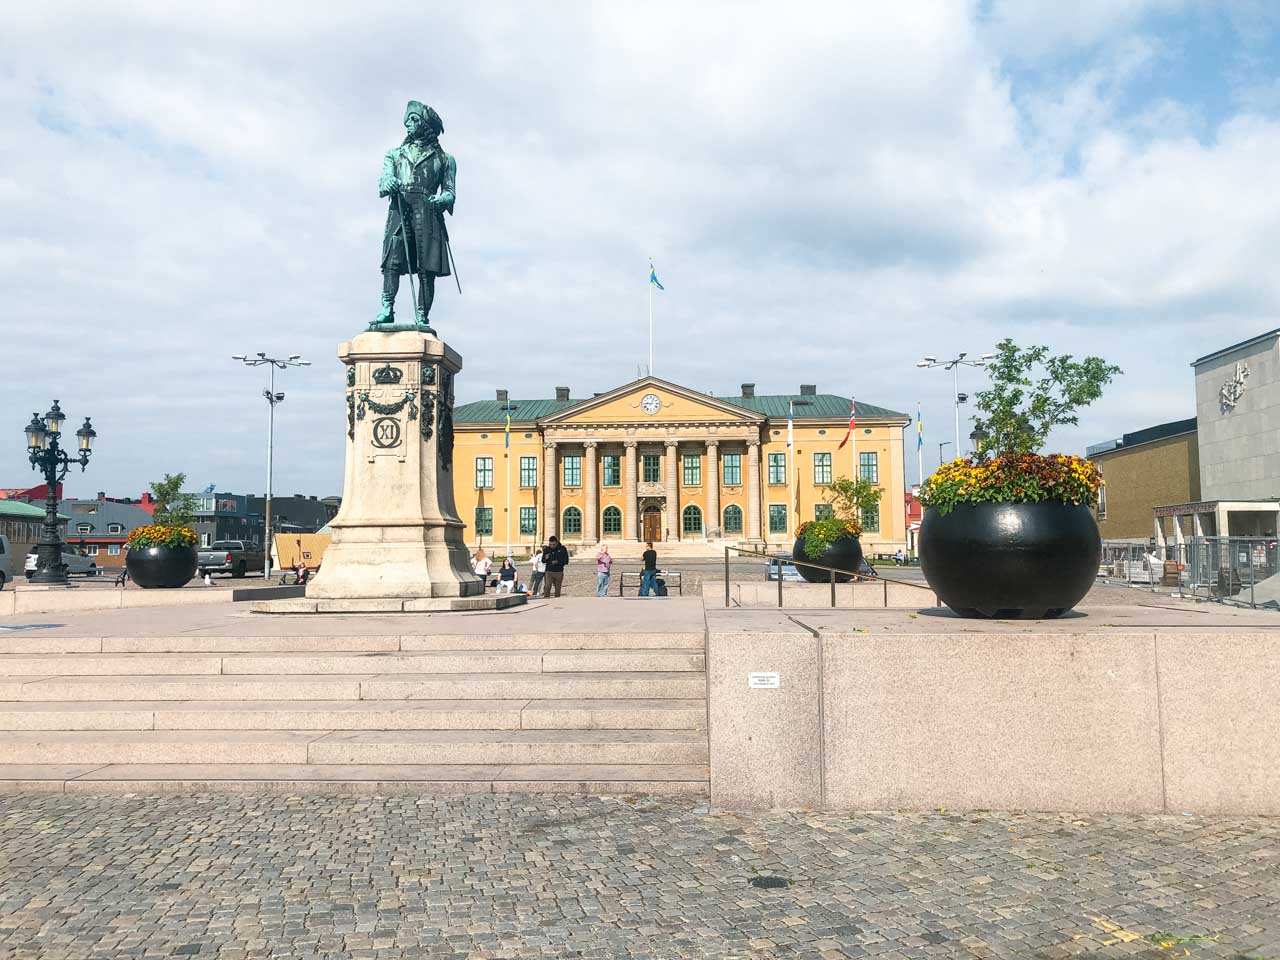 Karlskrona’s central square, Stortorget